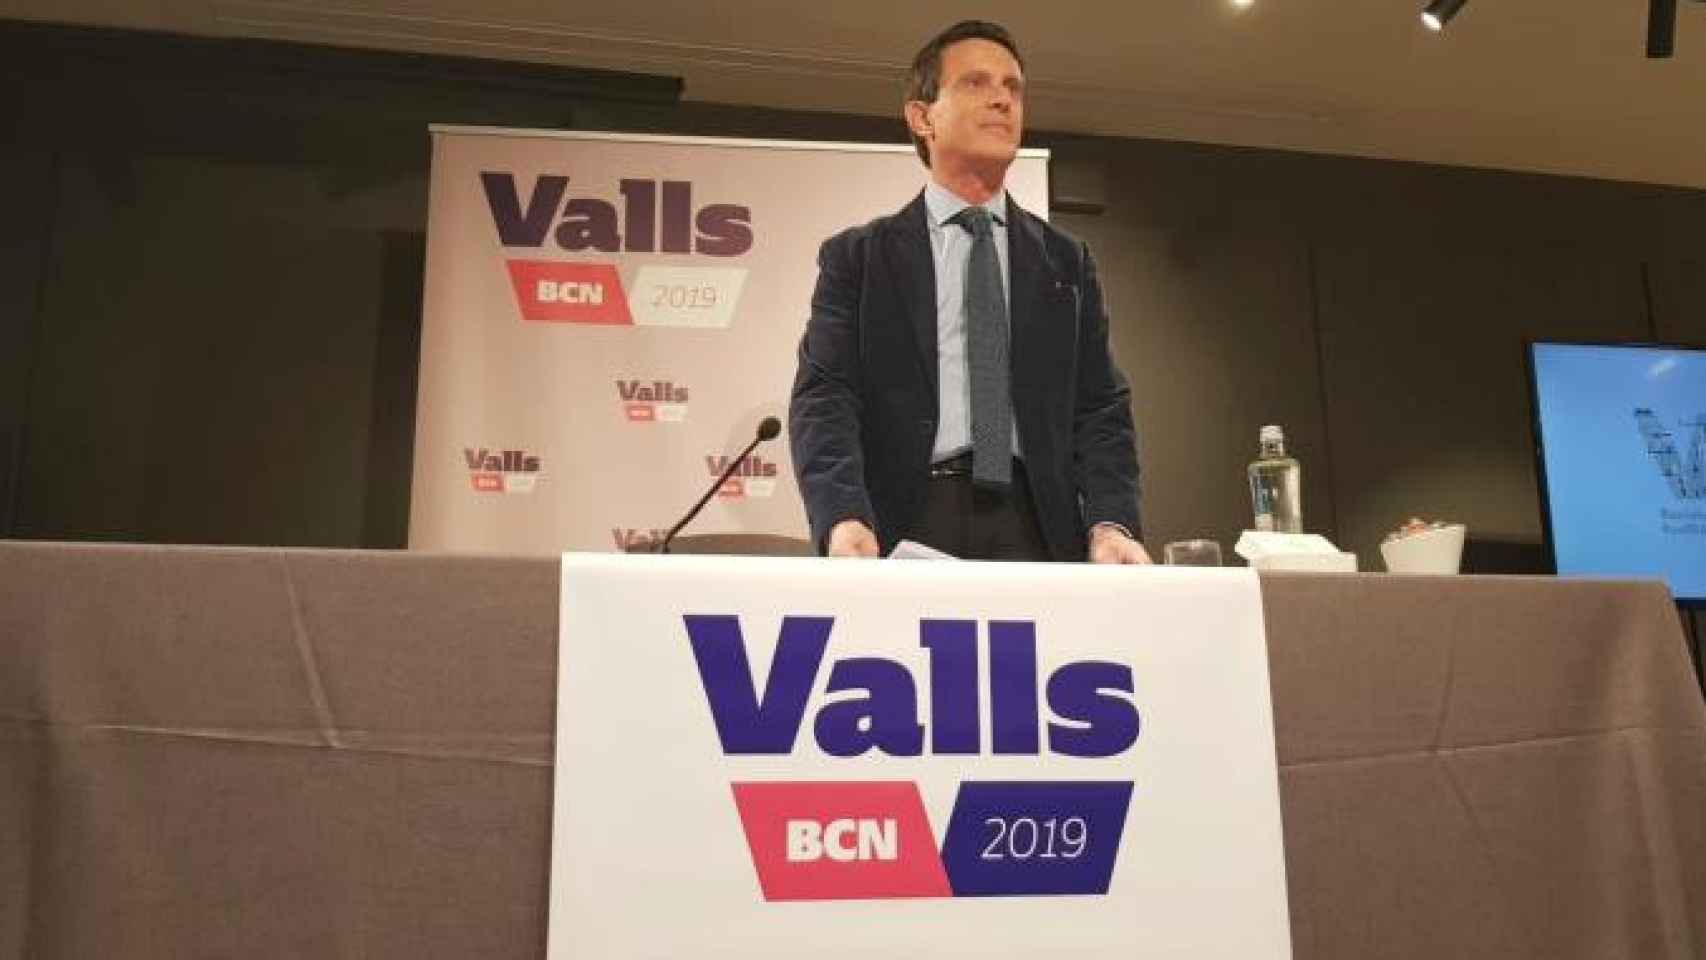 Manuel Valls, candidato a alcalde de Barcelona, durante la presentación de sus propuestas en materia de vivienda / CG